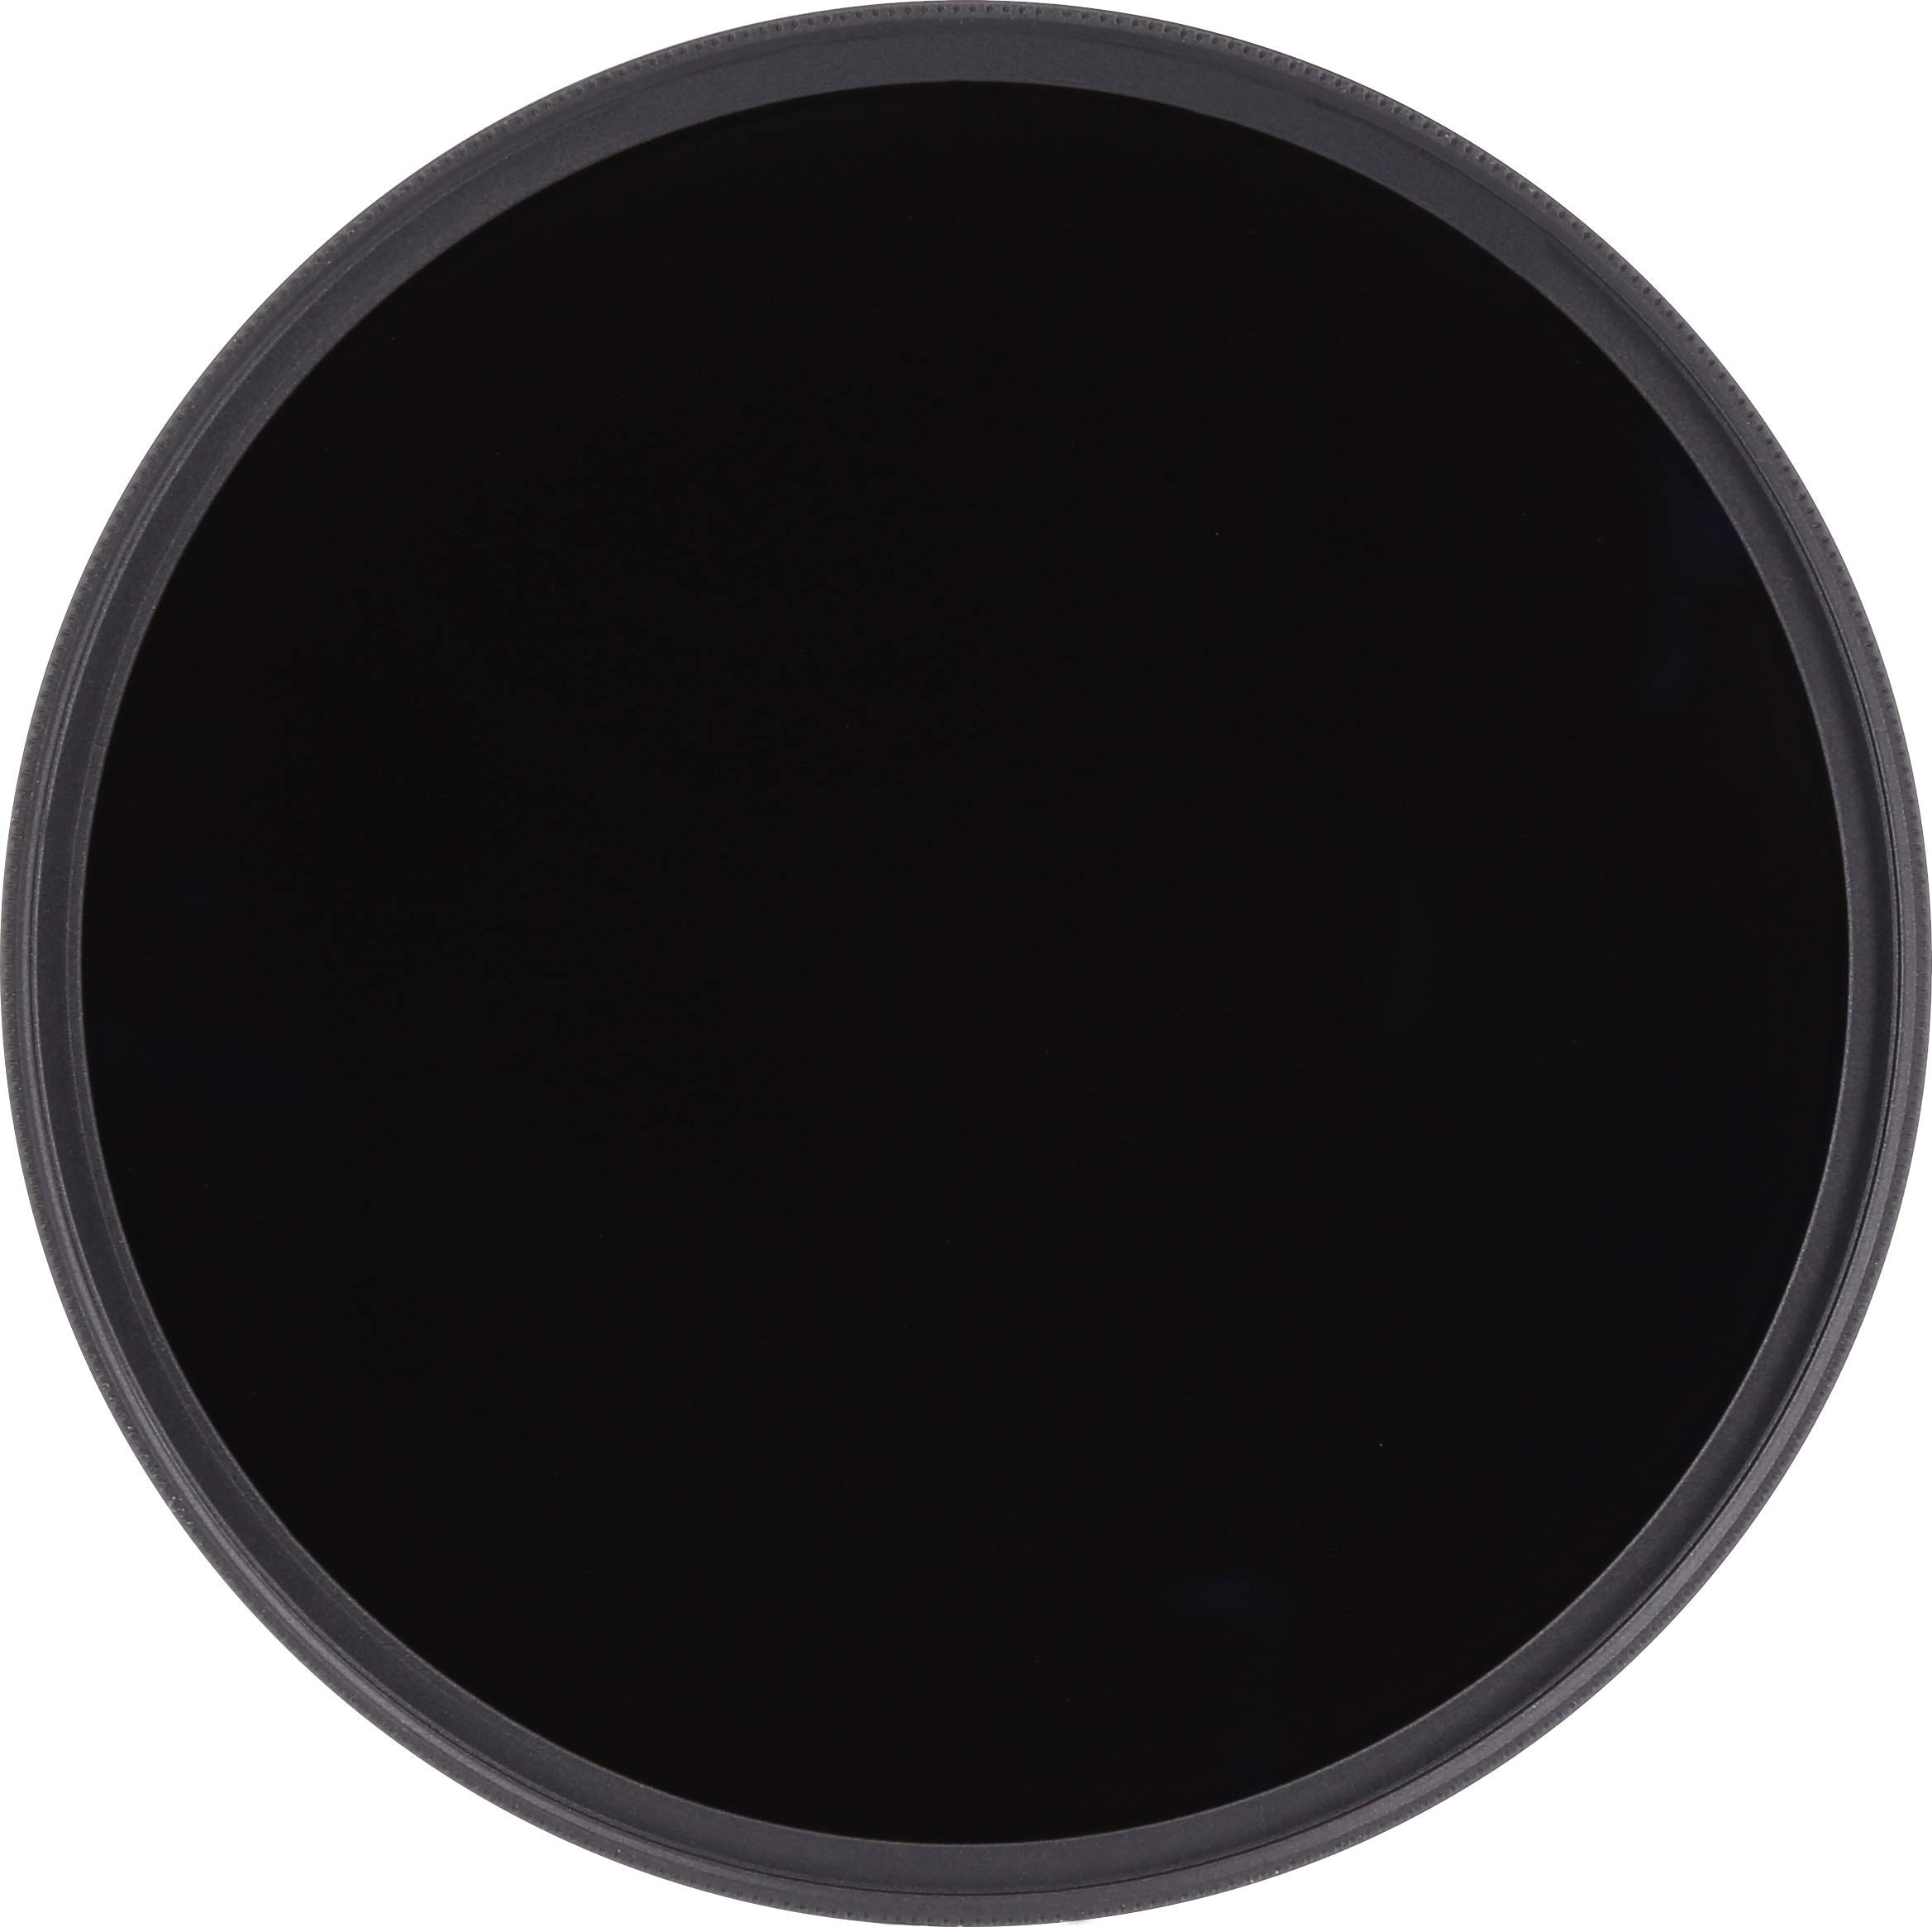 Rollei F:X Pro Rundfilter (67 mm, ND 4000 Filter) Neutraler Graufilter (Neutraldichtefilter) aus Gorilla Glas mit spezieller Beschichtung – ND4000 (12 Stopps/3,6)